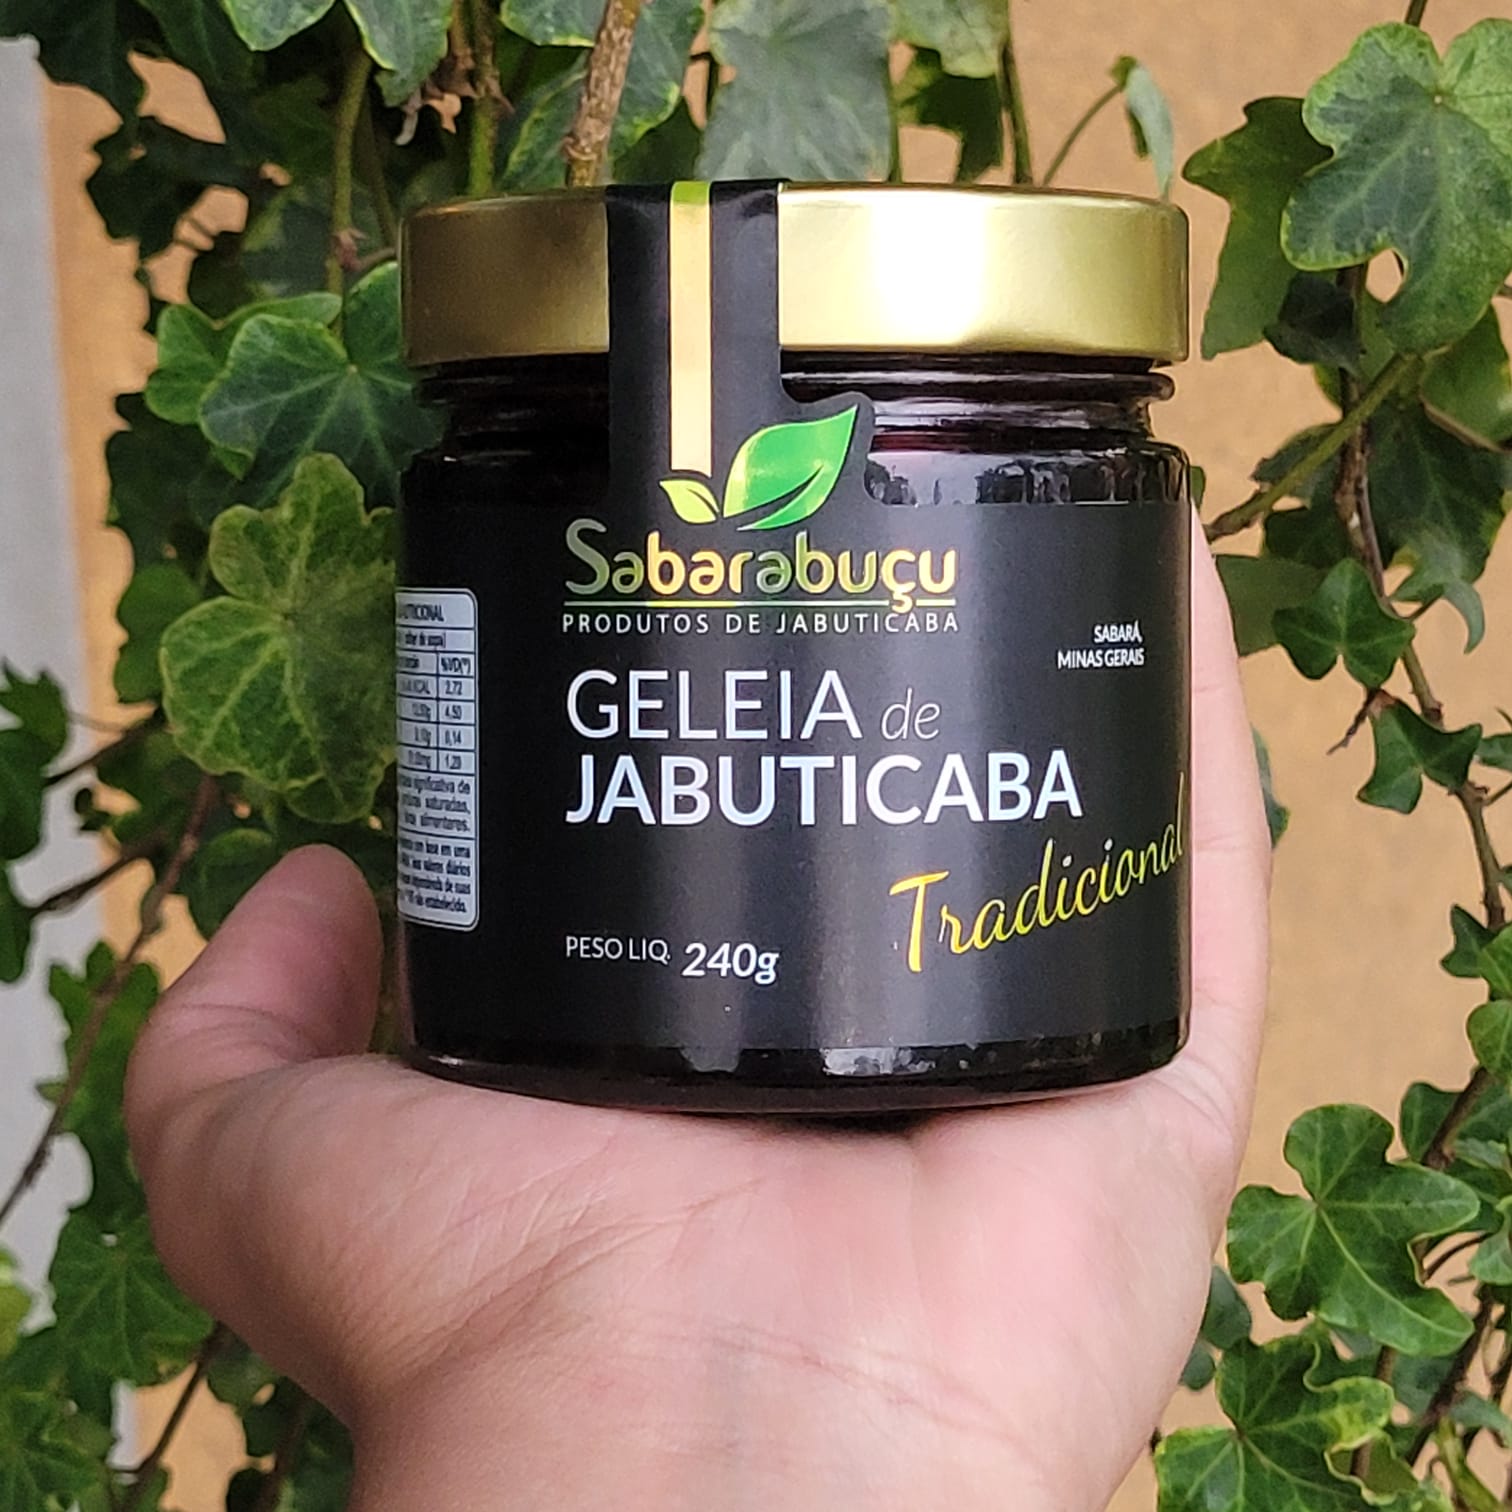 Geleia de Jabuticaba Sabarabuçu